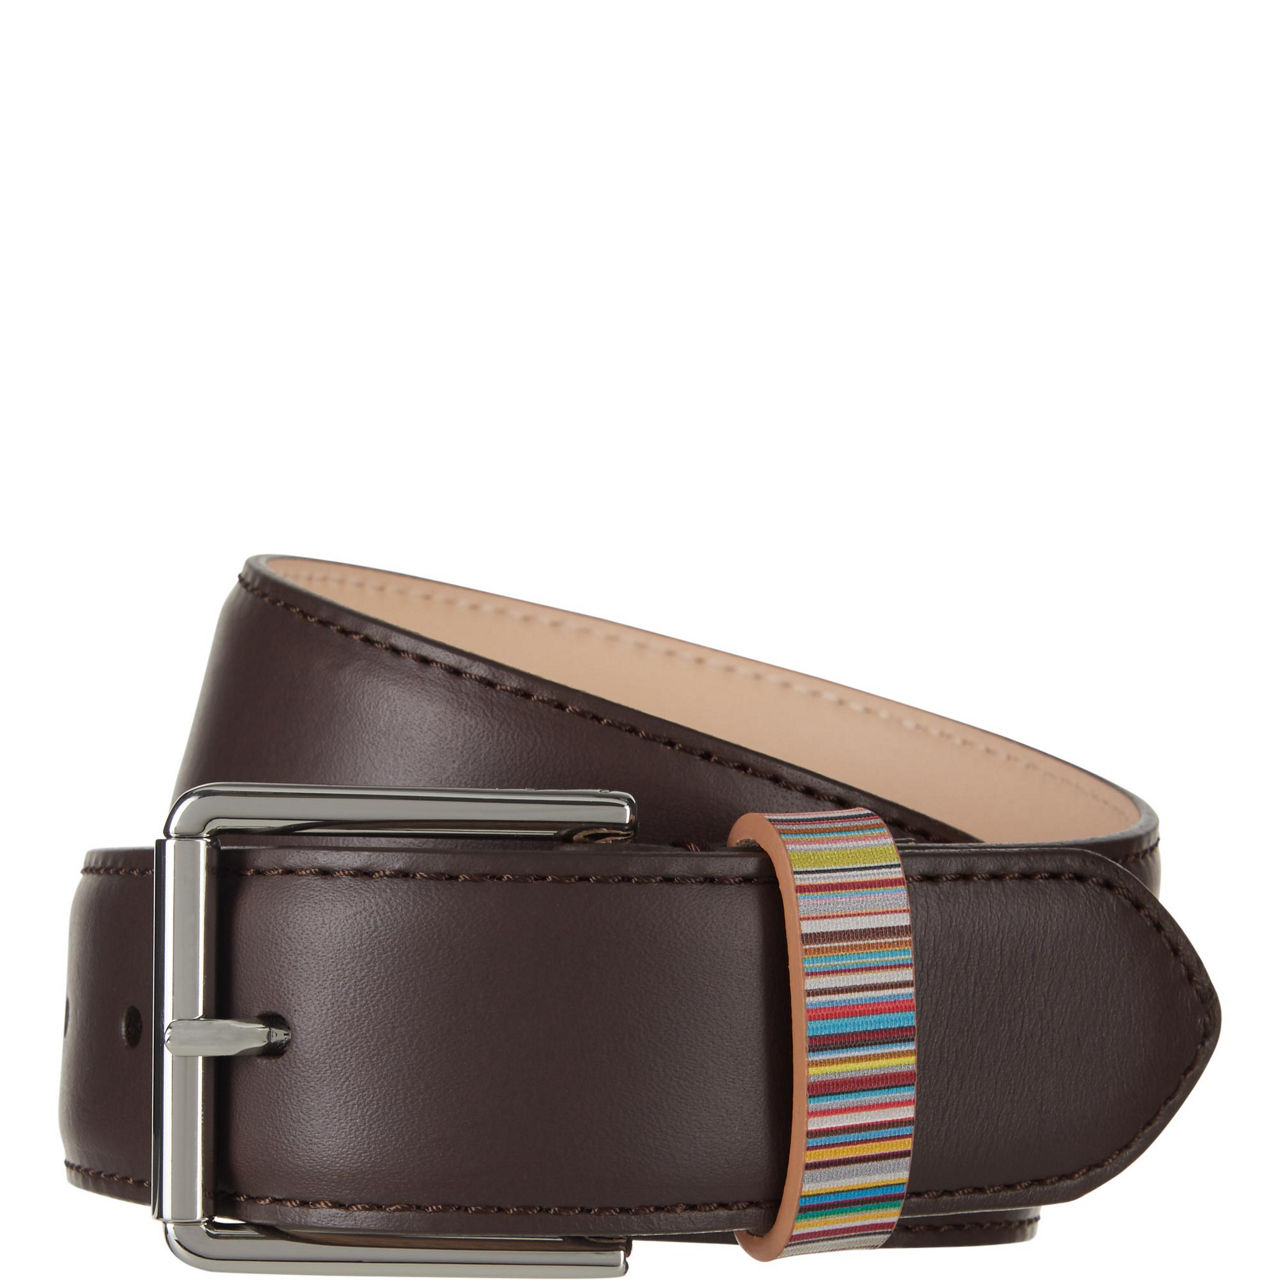 Beara Belts, Leather Belts Ireland